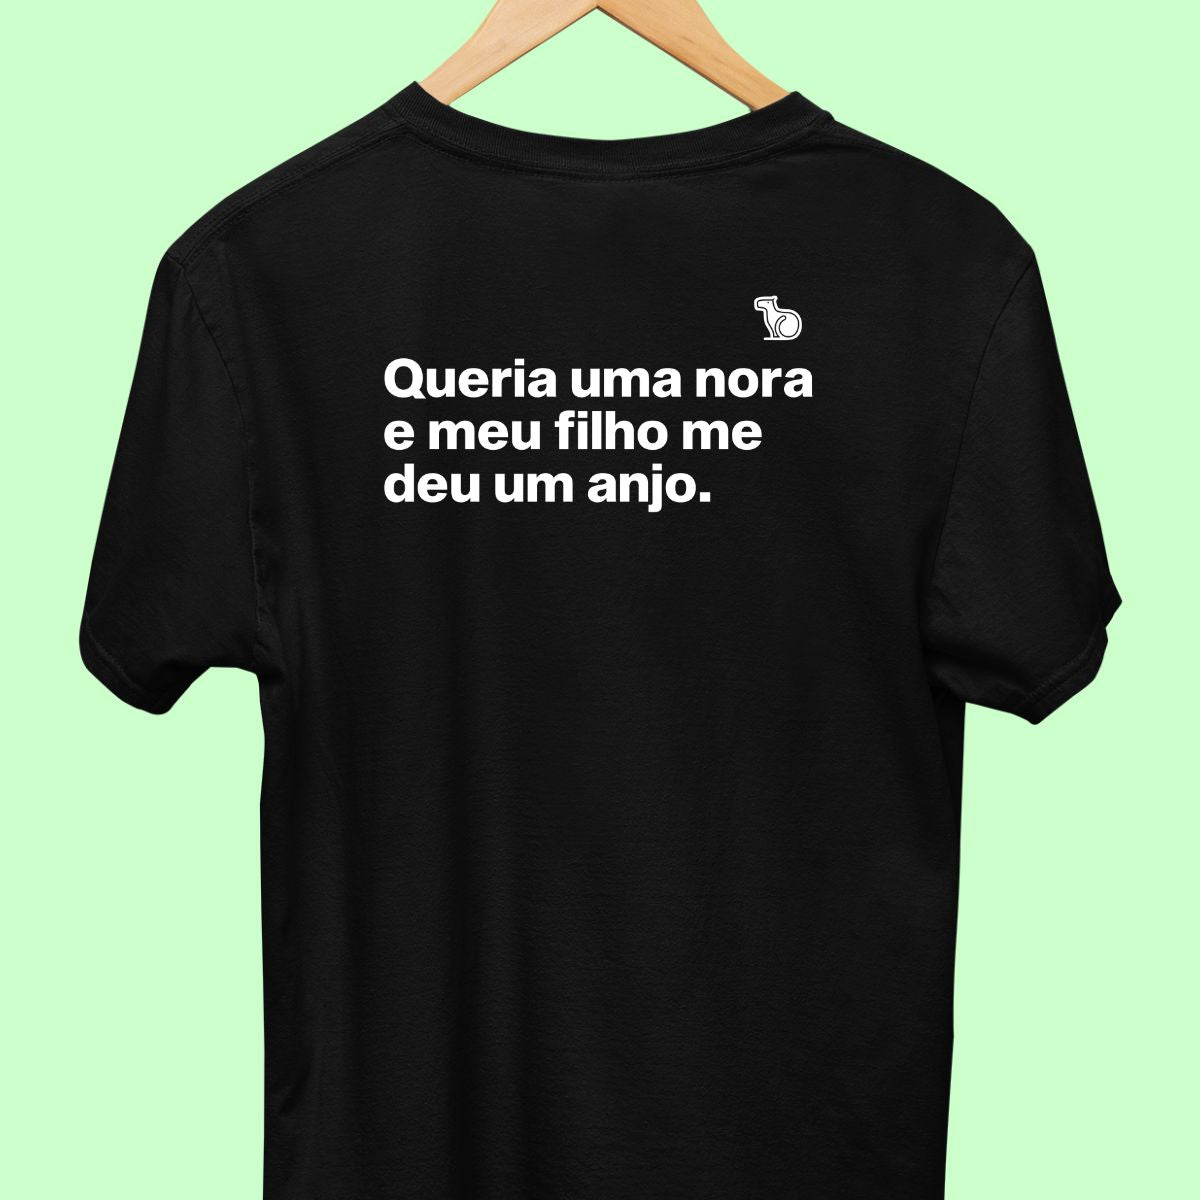 Camiseta com a frase "Queria uma nora e meu filho me deu um anjo." masculina preta.